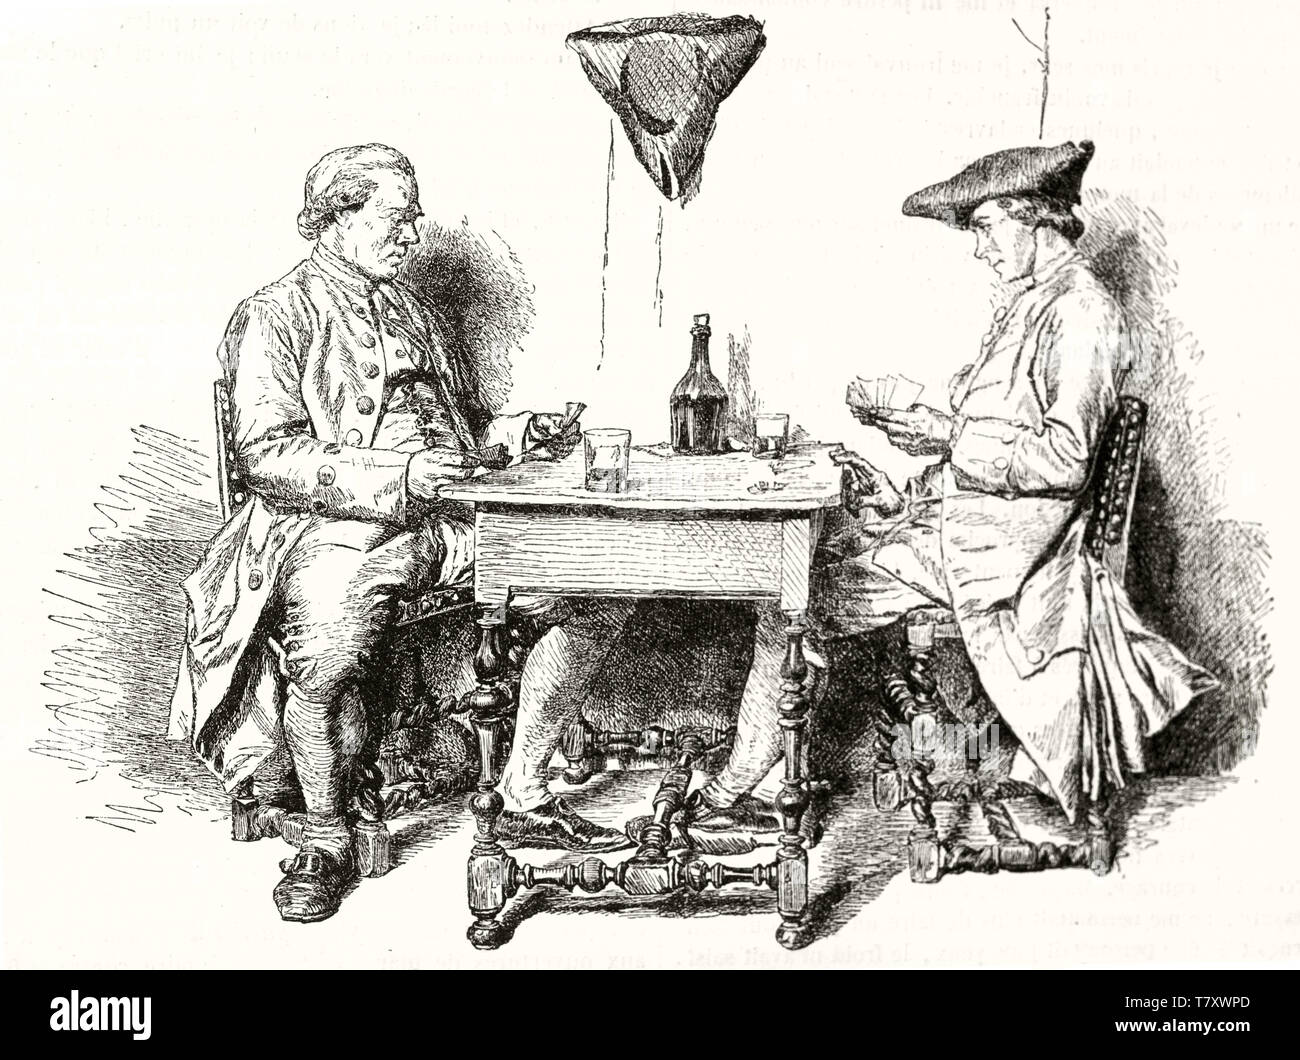 Zwei mittelalterlichen eleganten Menschen Karte auf einen kleinen Tisch und tranken Wein. Alten grauen Ton Abbildung zeigt zwei Spieler. Nach Messoinier publ. Auf Magasin Pittoresque Paris 1848 Stockfoto